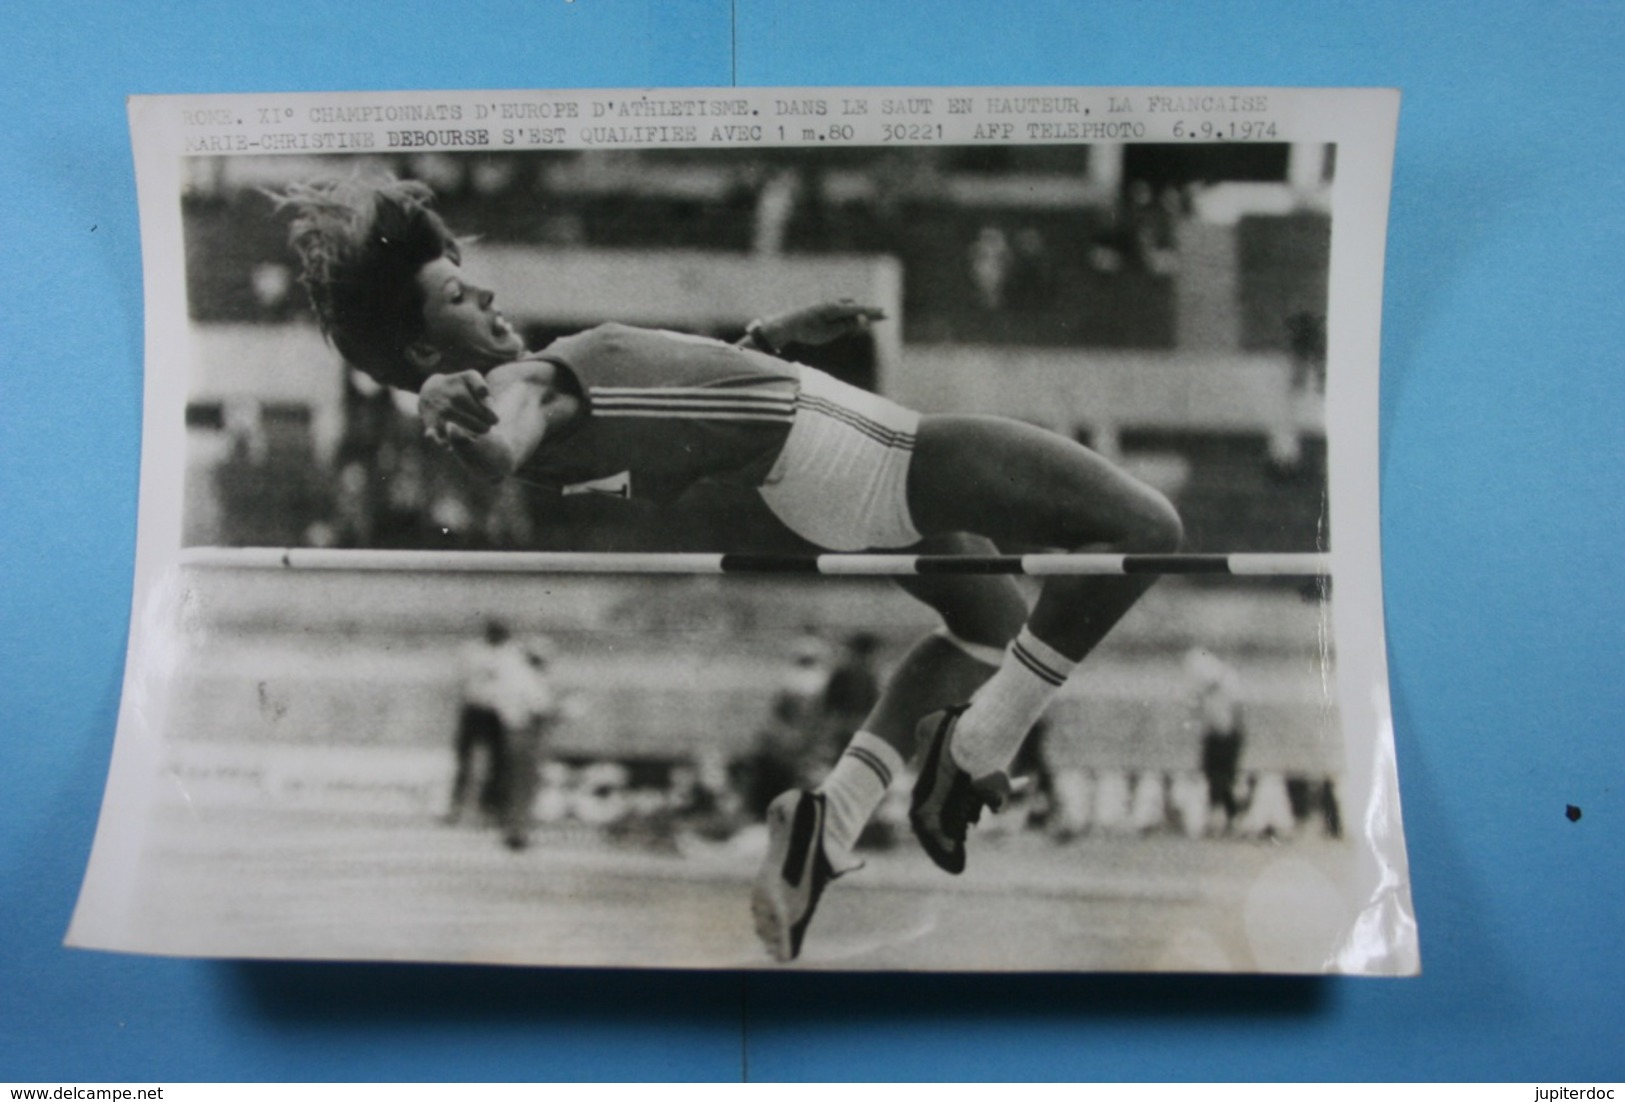 Rome Championnats D'Europe D'athlétisme 6/9/74 Marie-Christine Debourse Qualifiée Au Saut En Hauteur /71/ - Sports